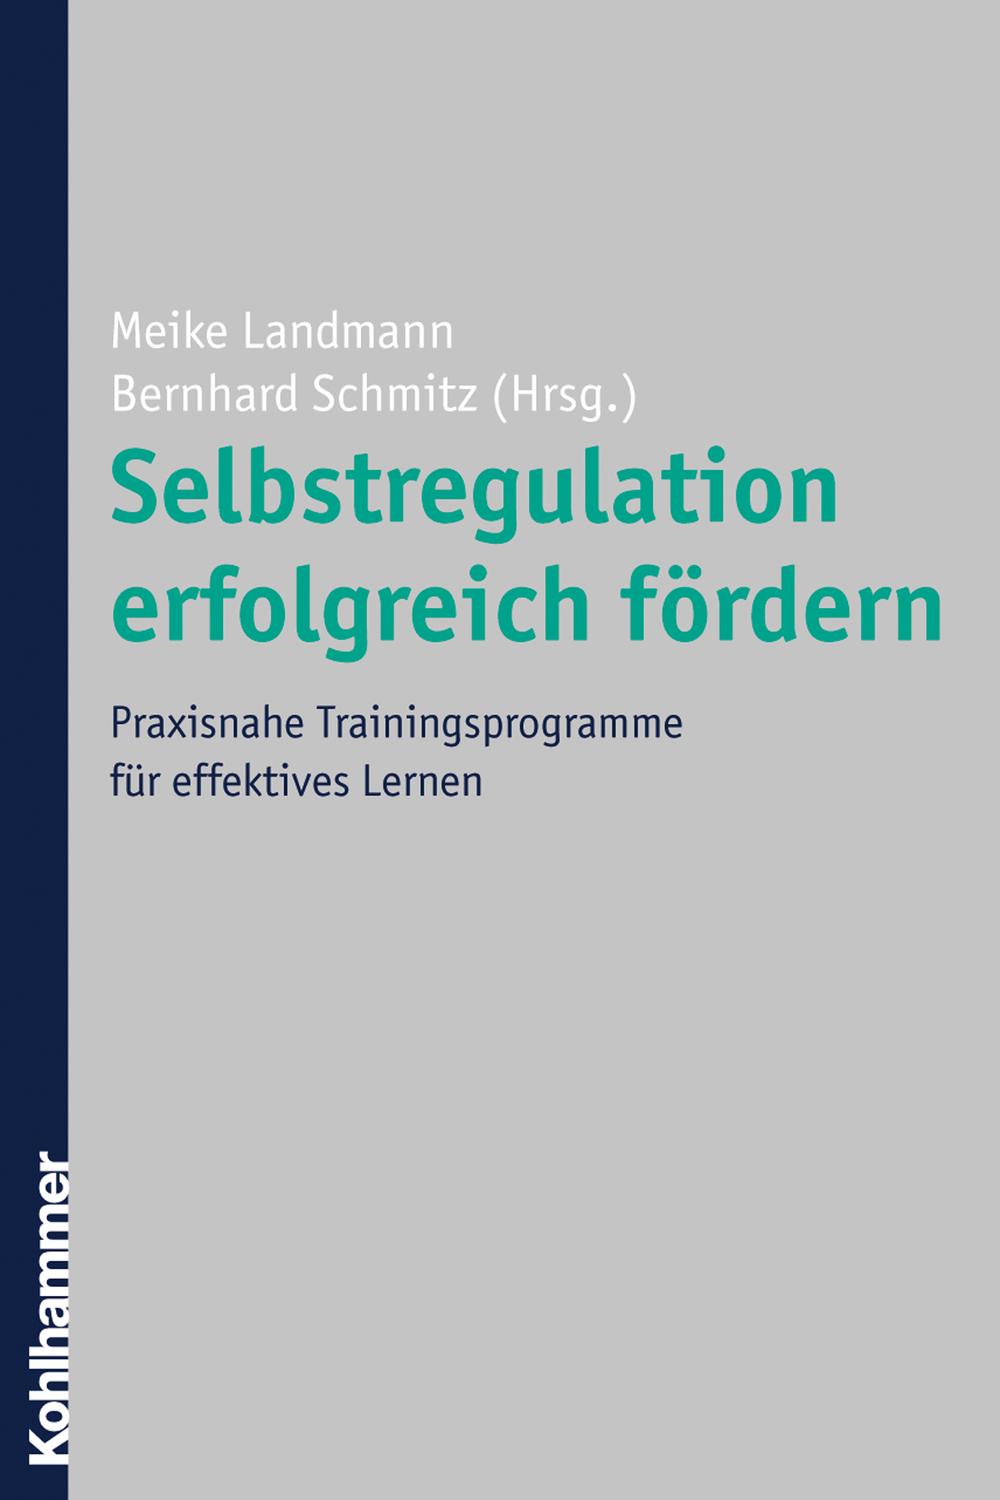 Selbstregulation erfolgreich fördern - Meike Landmann, Bernhard Schmitz